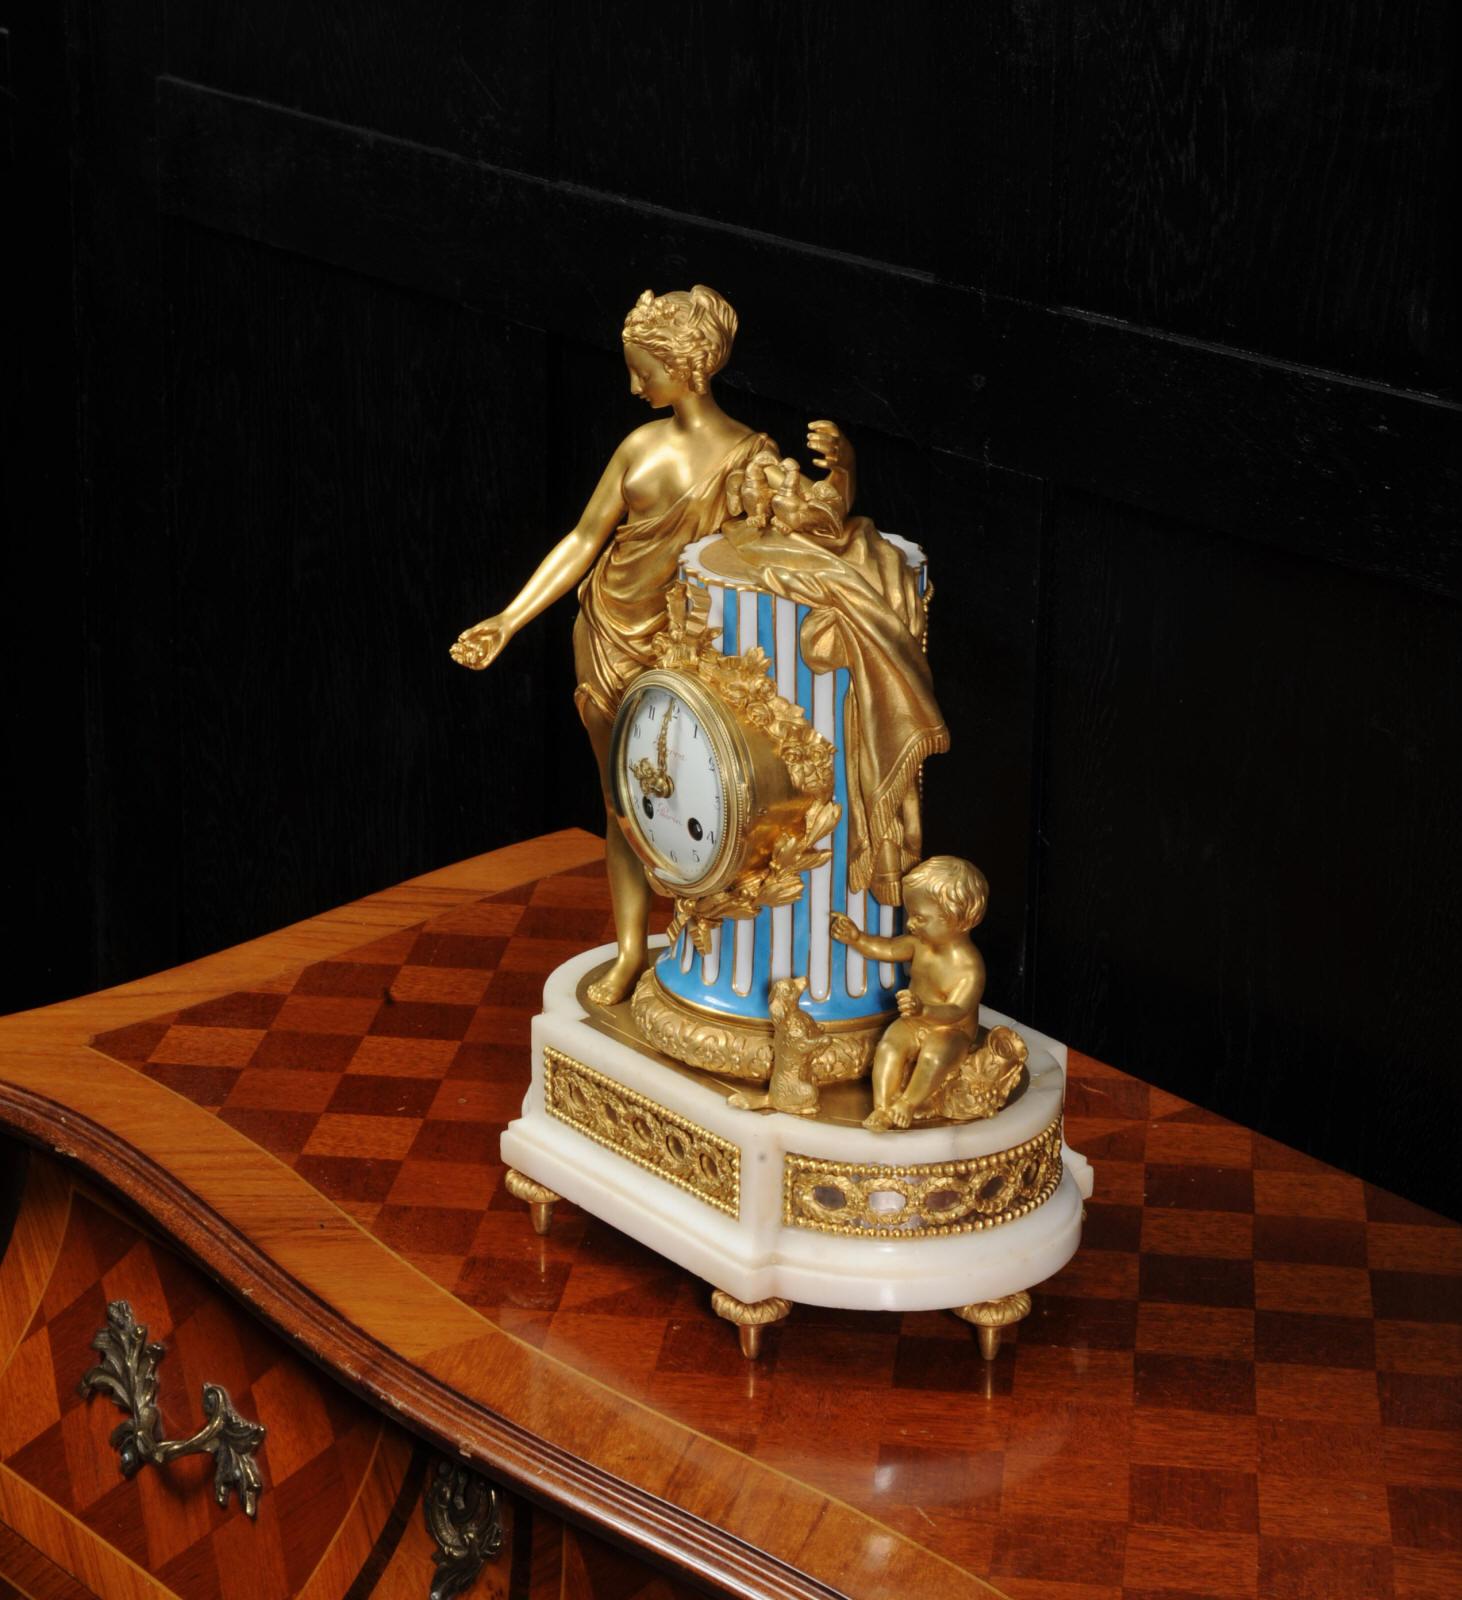 Venus, Putto and a Dog, Antique French Sèvres Porcelain and Ormolu Clock 6